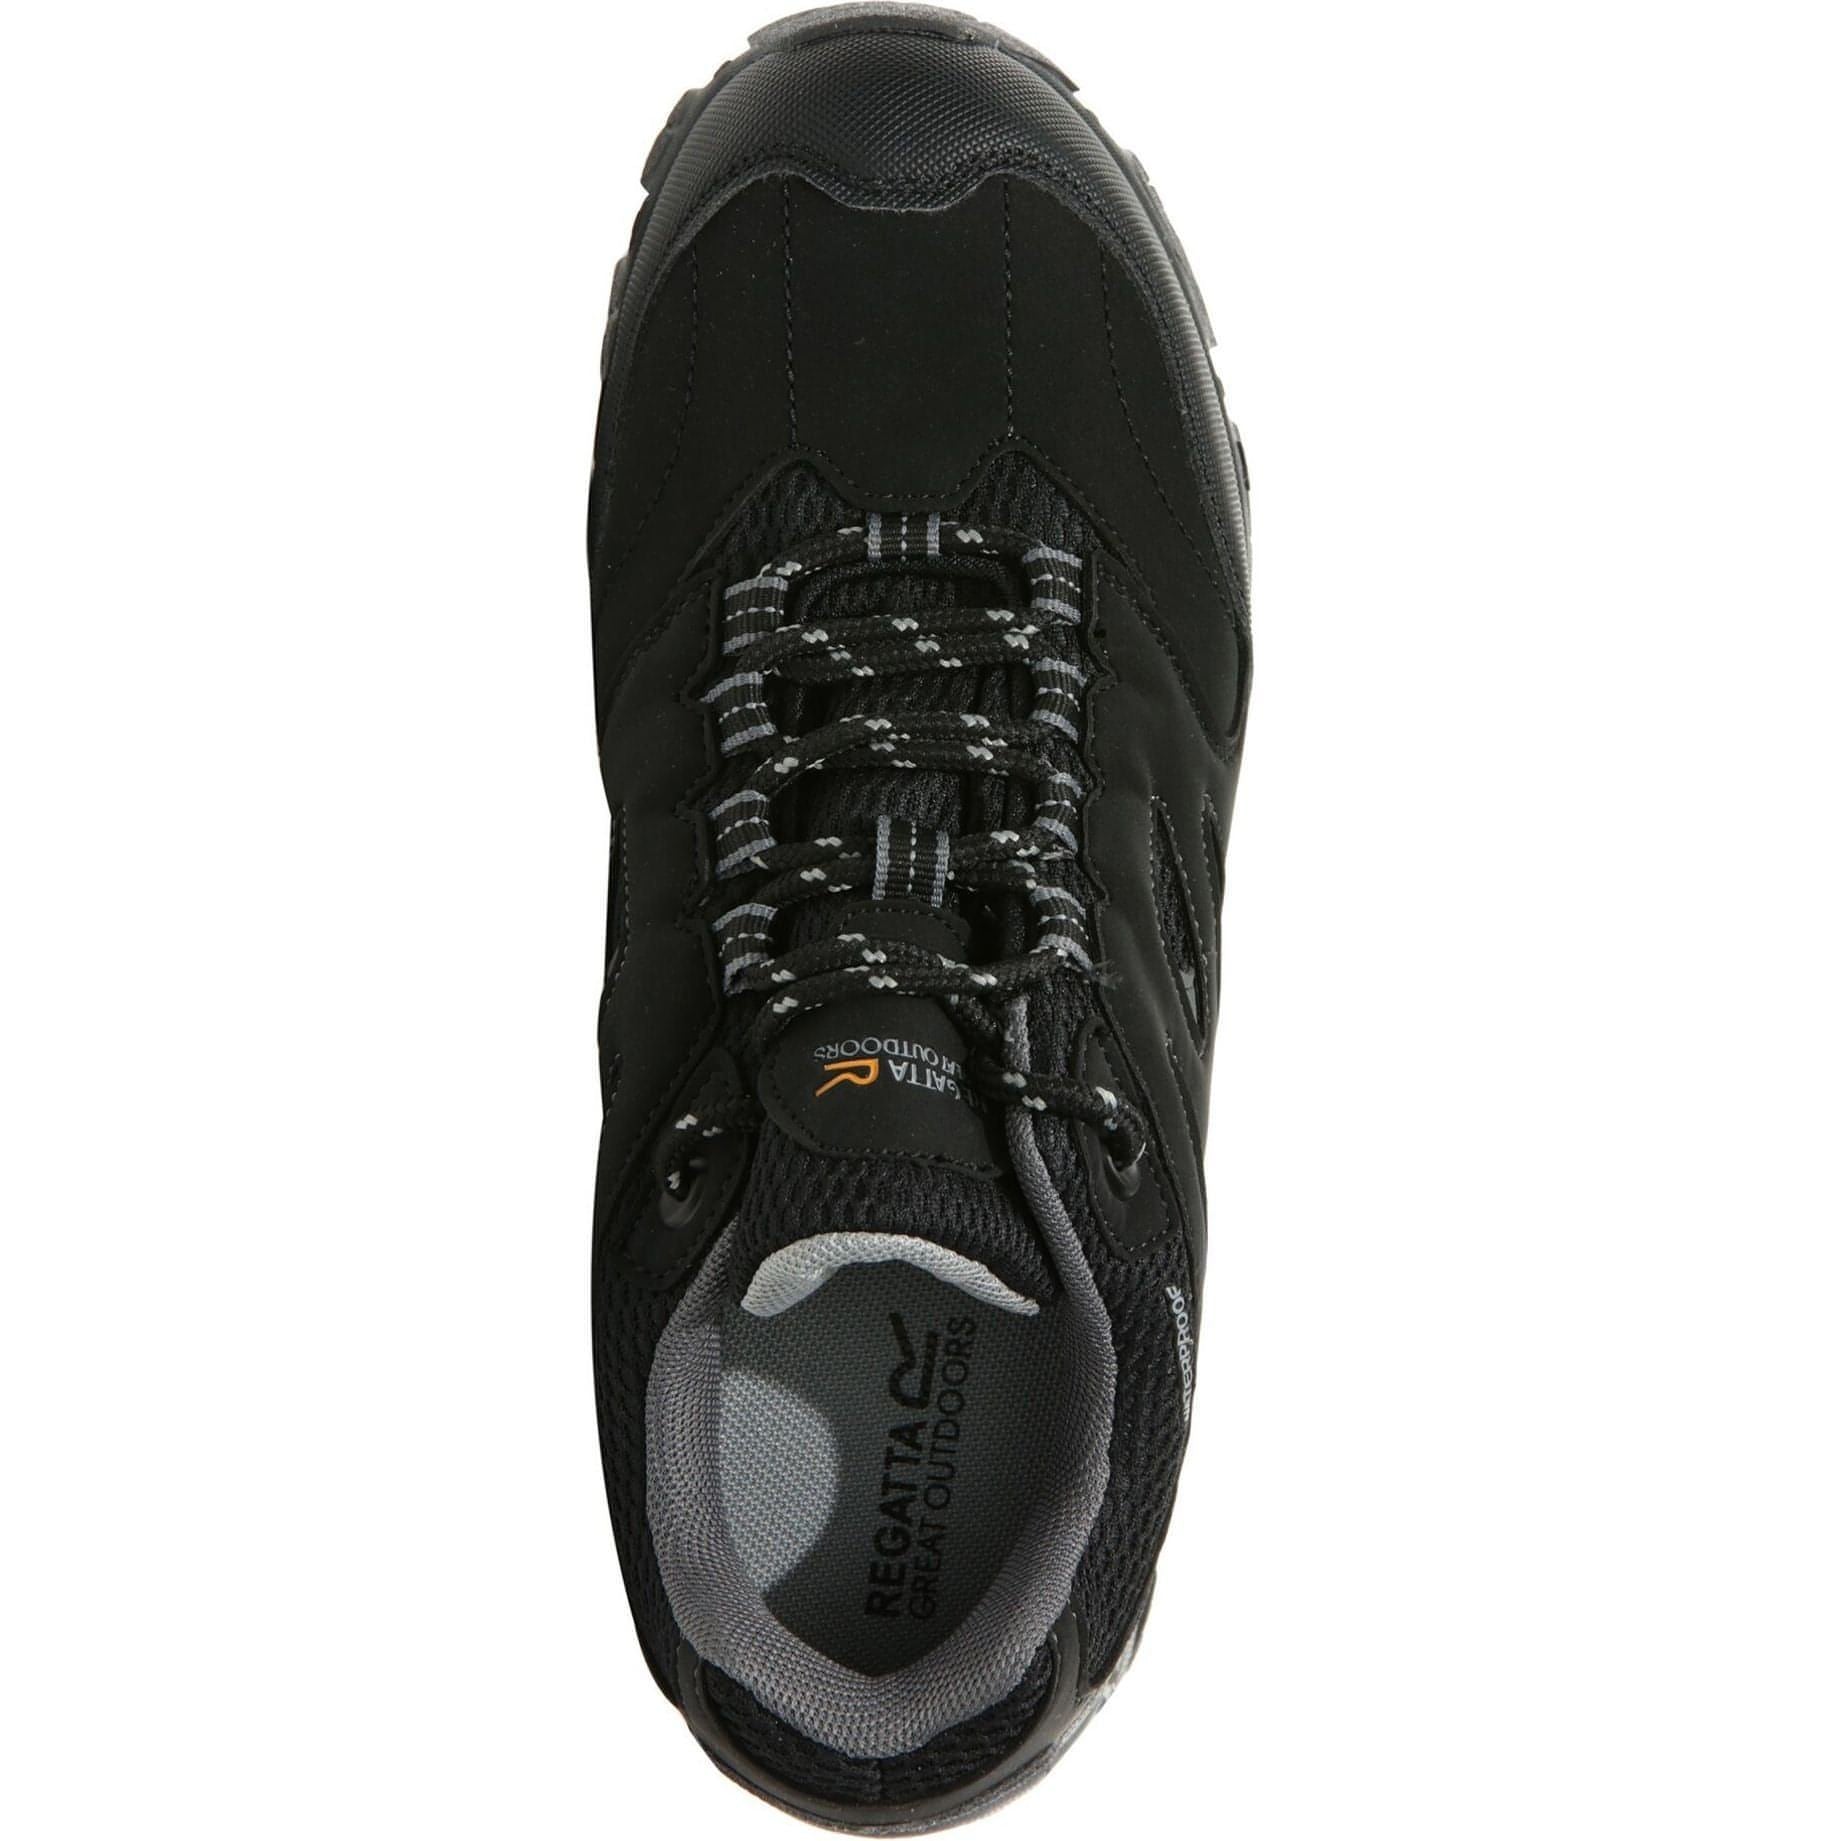 Regatta Holcombe Waterproof Shoes Rkf572  Top